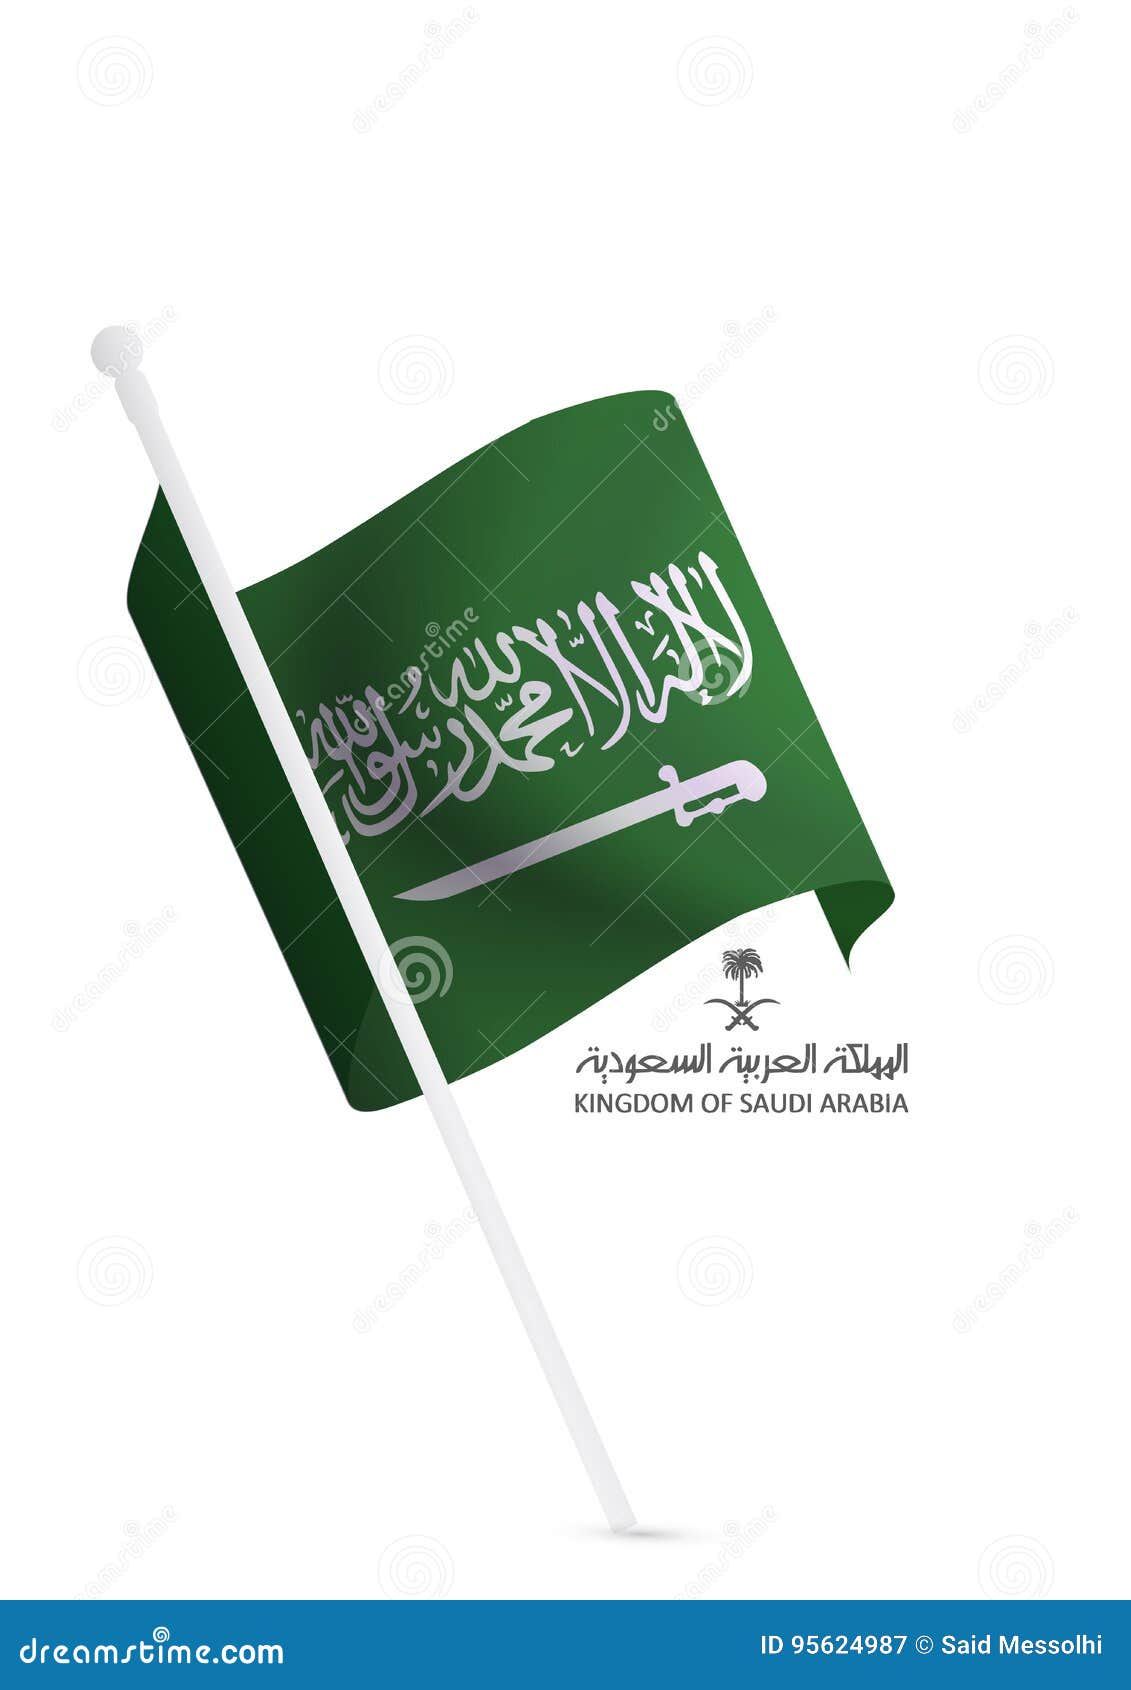 Саудовская аравия перевод. Надпись на флаге Саудовской Аравии. Флаг Саудовской Аравии перевод. Флаг Саудовской Аравии перевод надписи на флаге. Надпись на флаге Саудовской Аравии перевод.